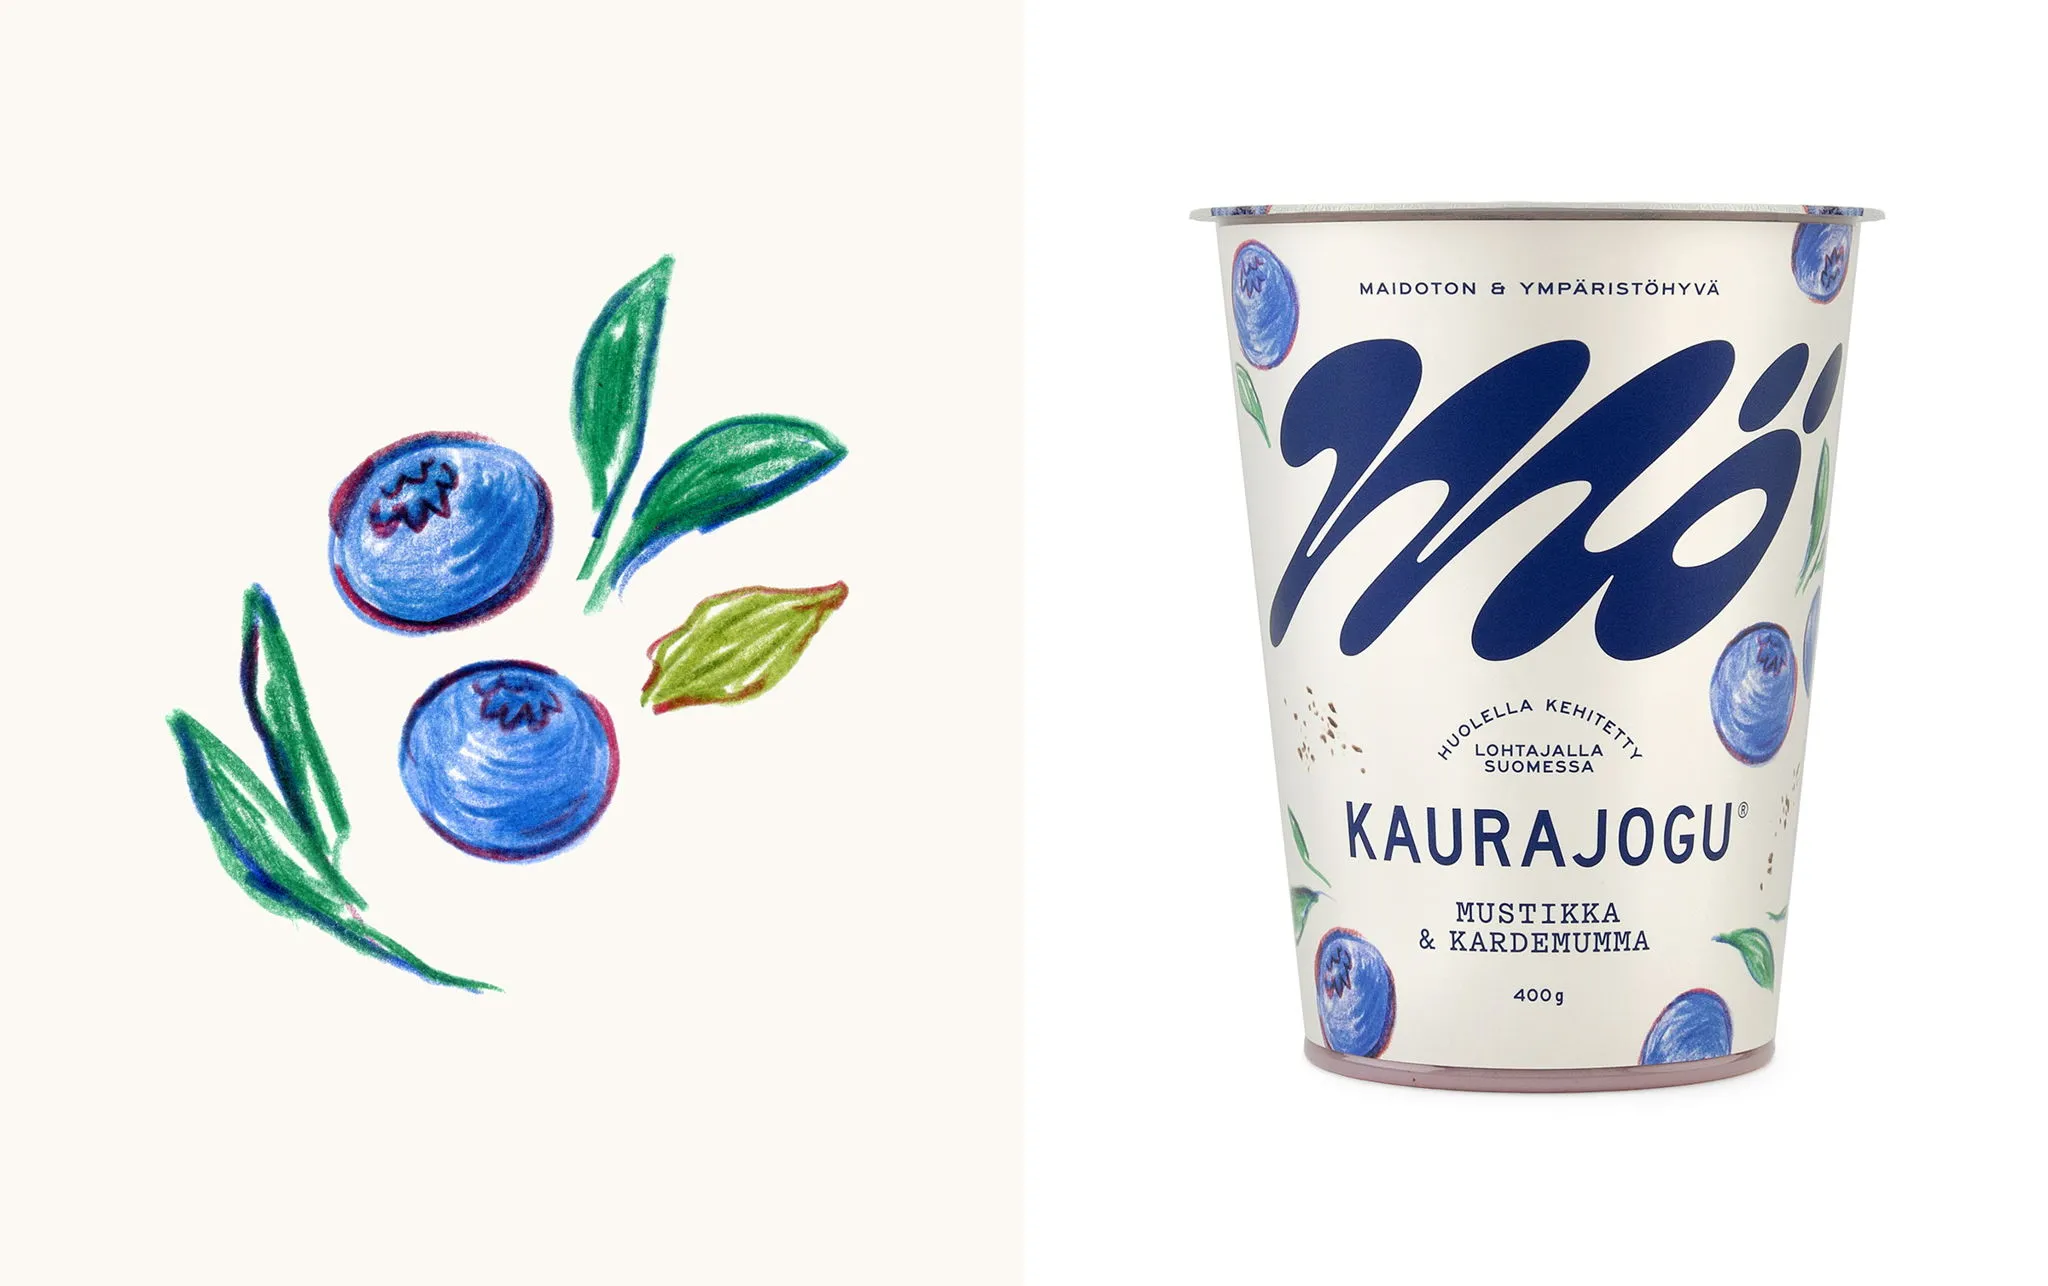 Hình minh họa top 2 thiết kế bao bì sữa đẹp nhất thế giới